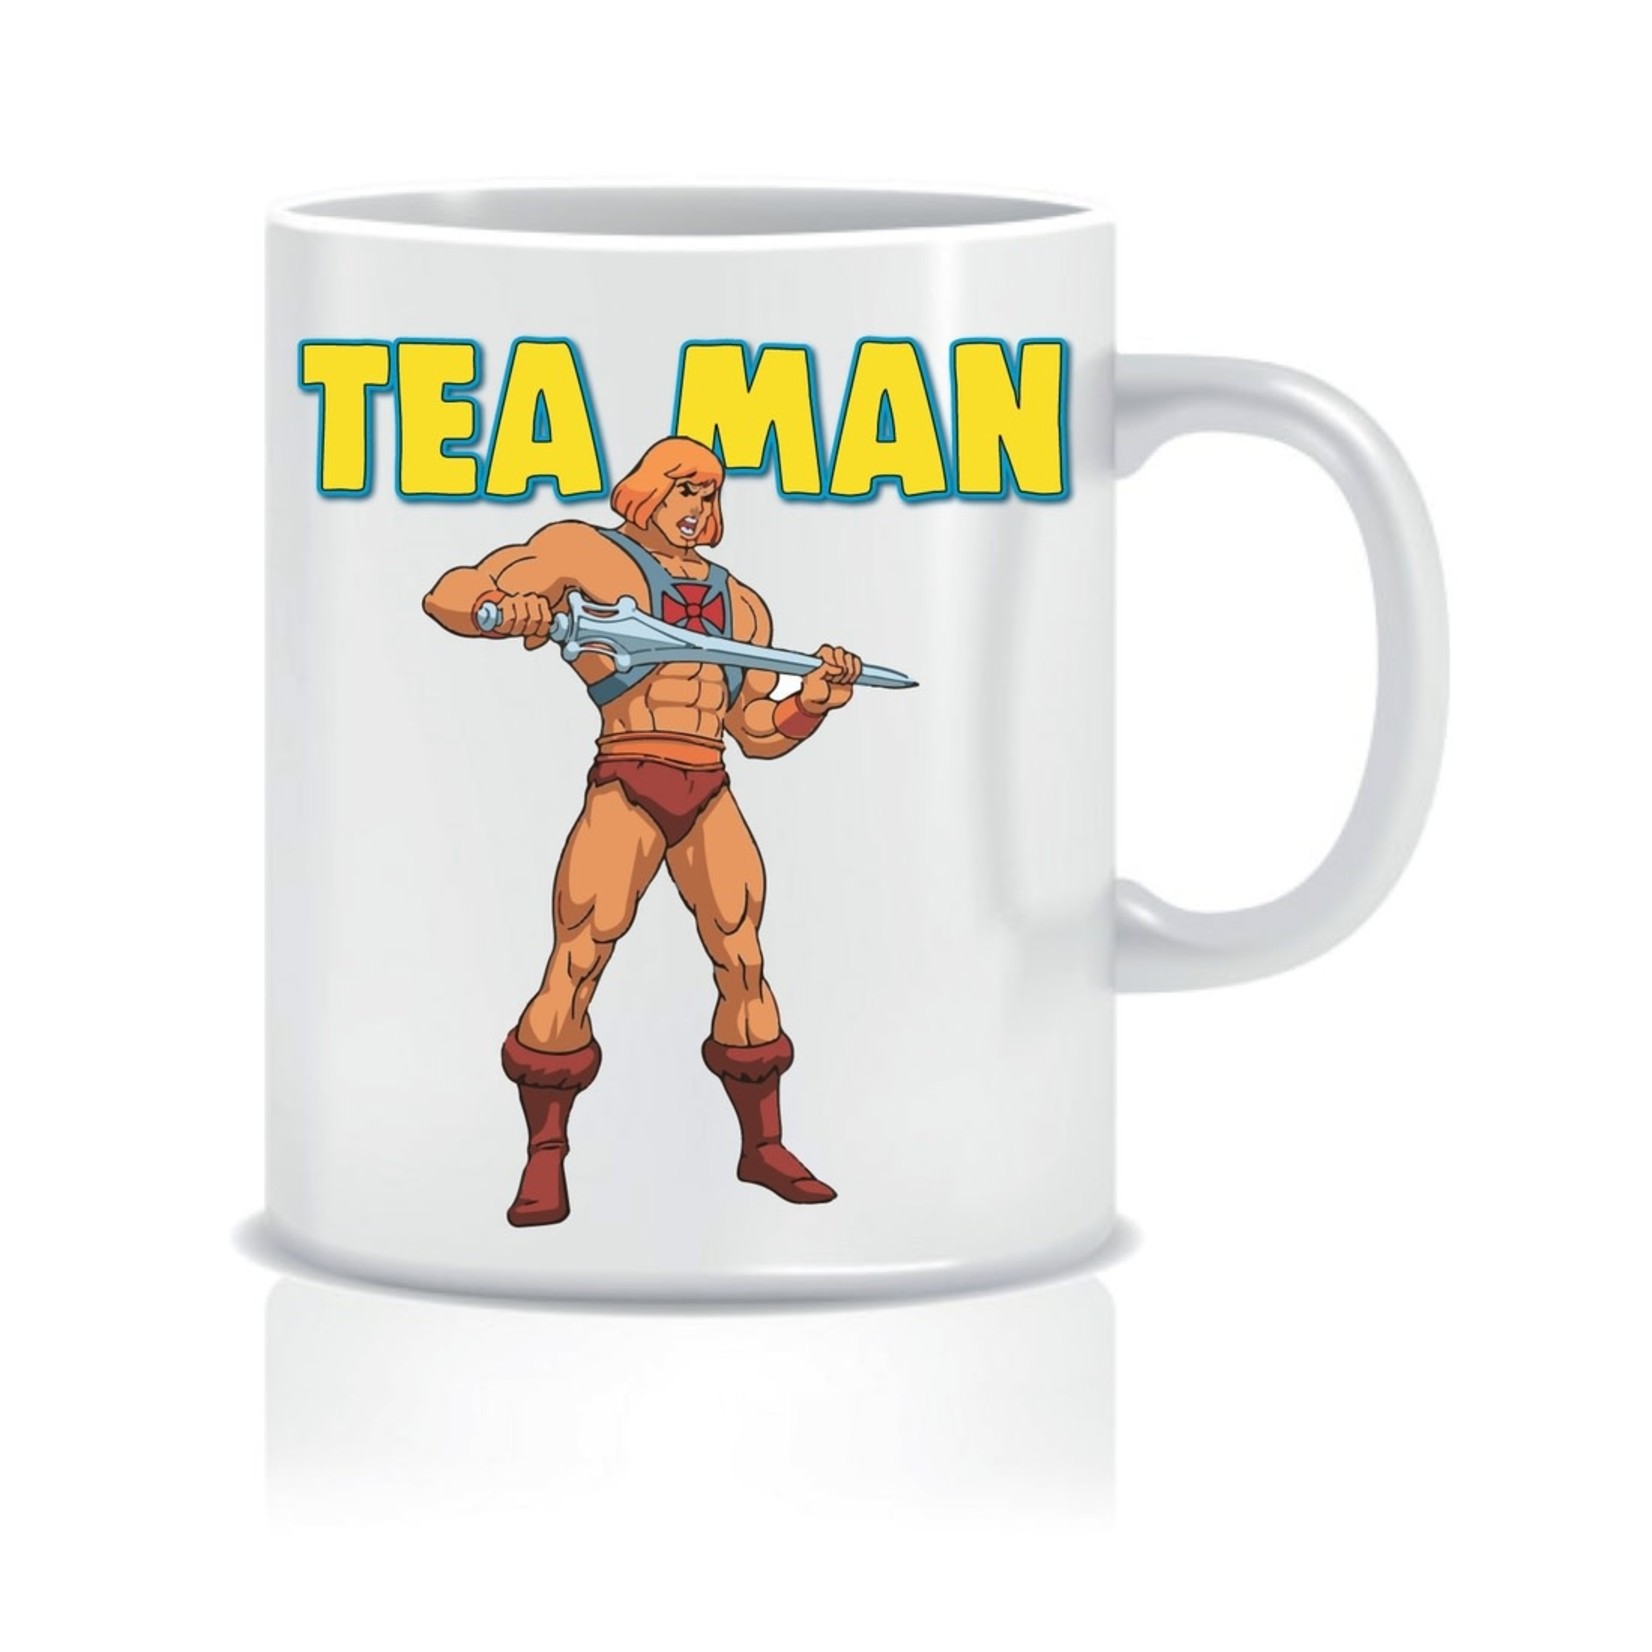 Mug - Tea Man (He-Man)